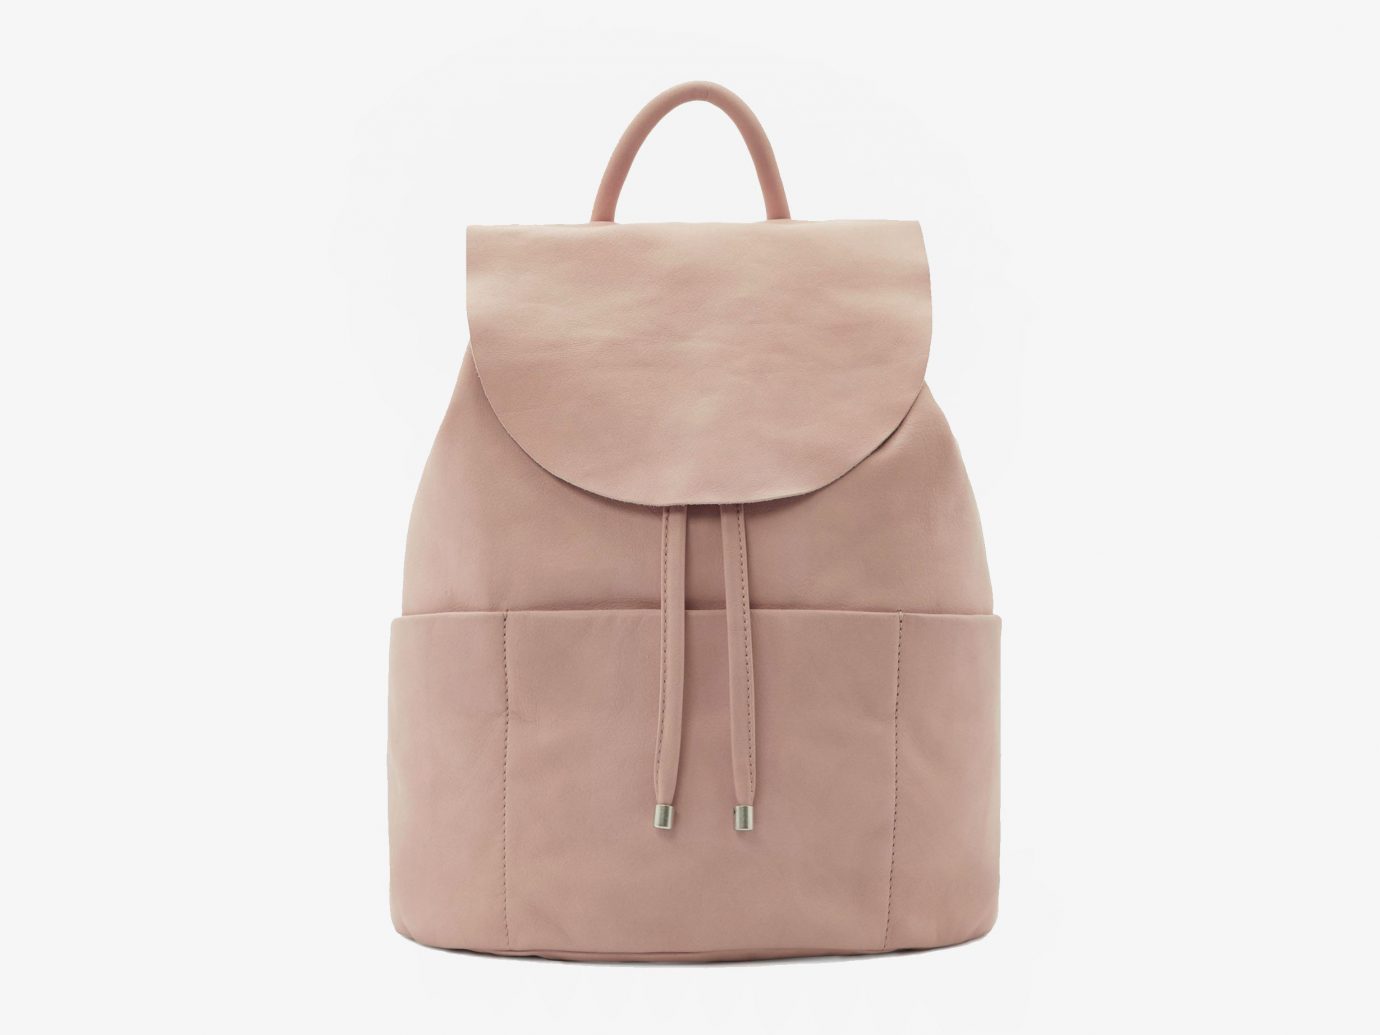 Style + Design handbag accessory bag indoor brown leather shoulder bag beige tote bag human body pocket textile case tan